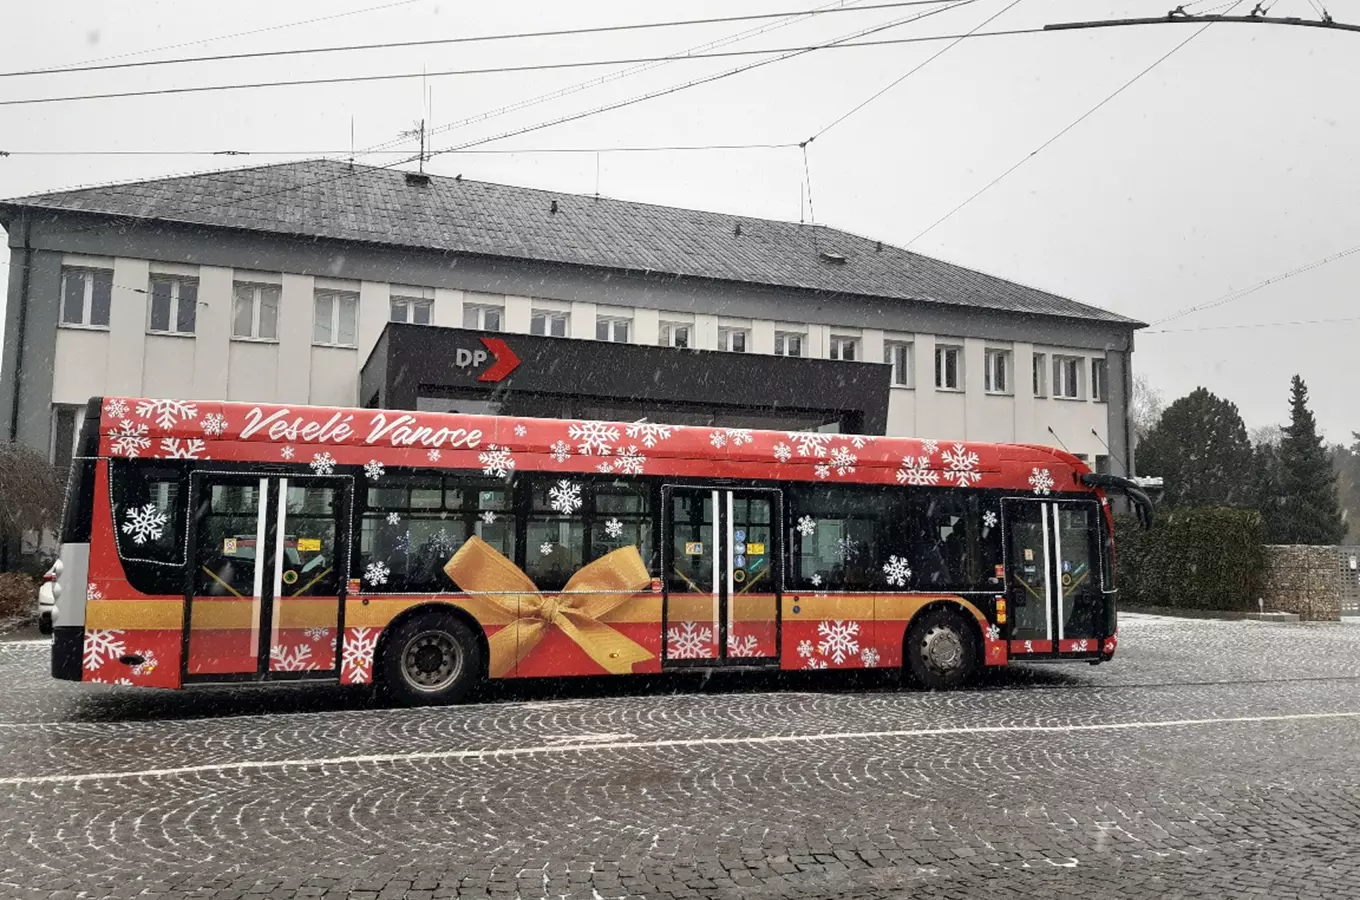 Vánočně nazdobený elektrobus v Hradci Králové